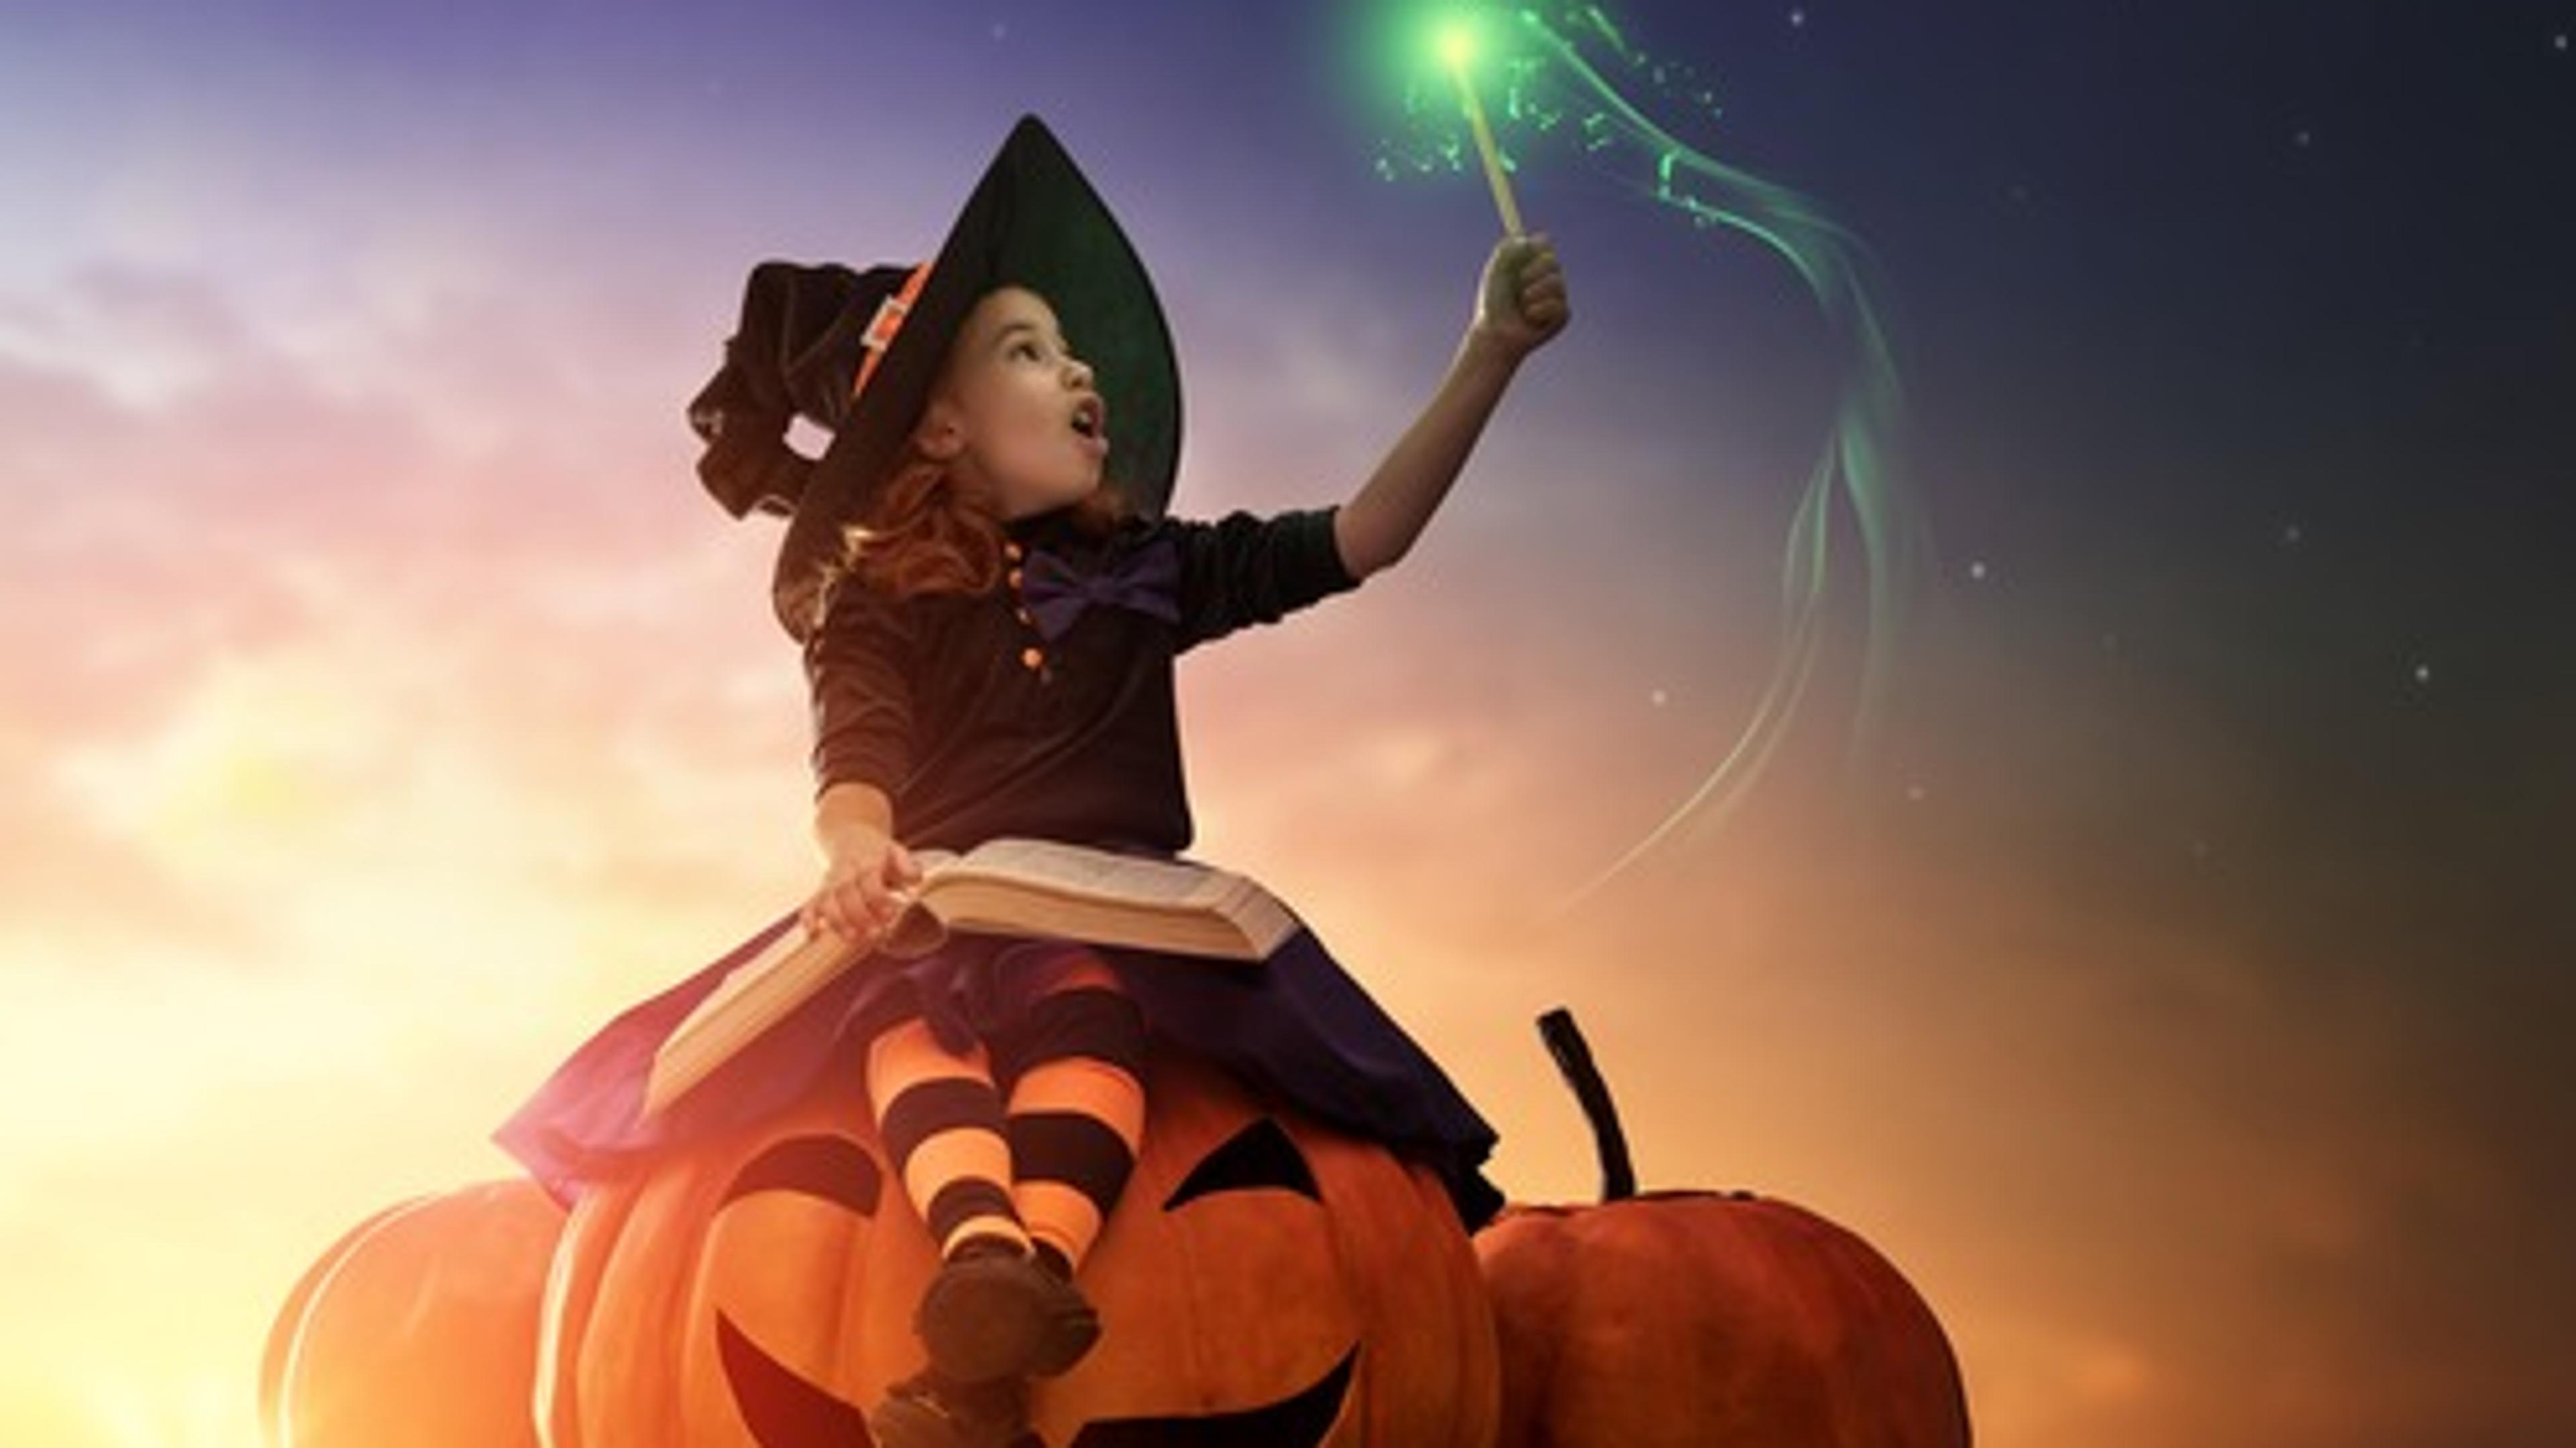 Girl on a halloween pumpkin 